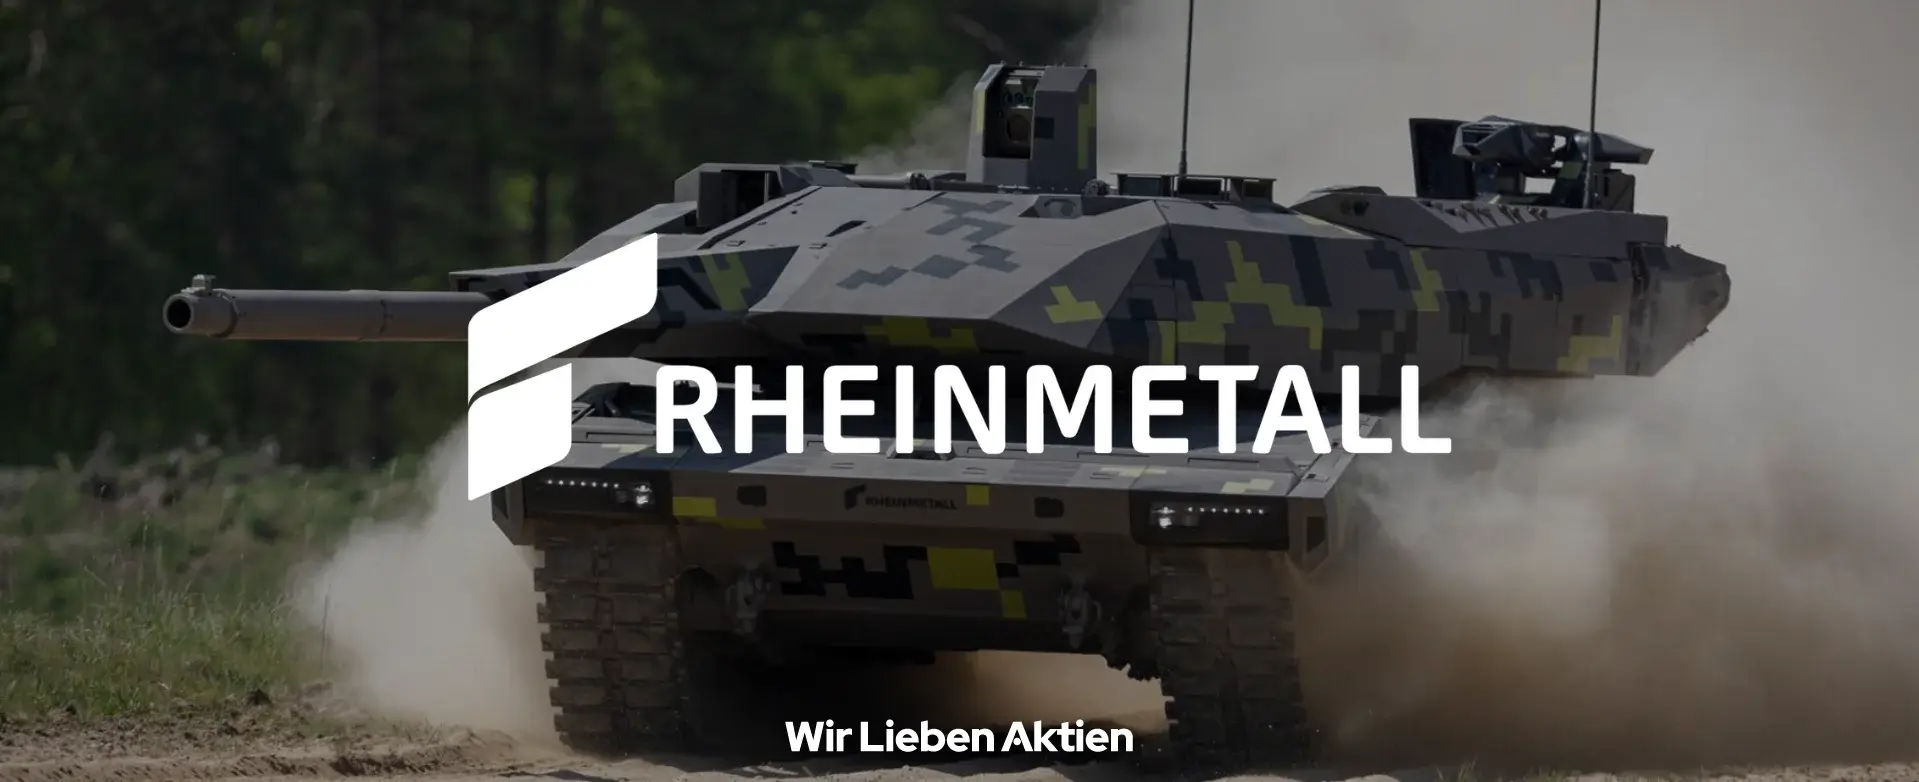 Rheinmetall Aktie Analyse Einleitungsbild